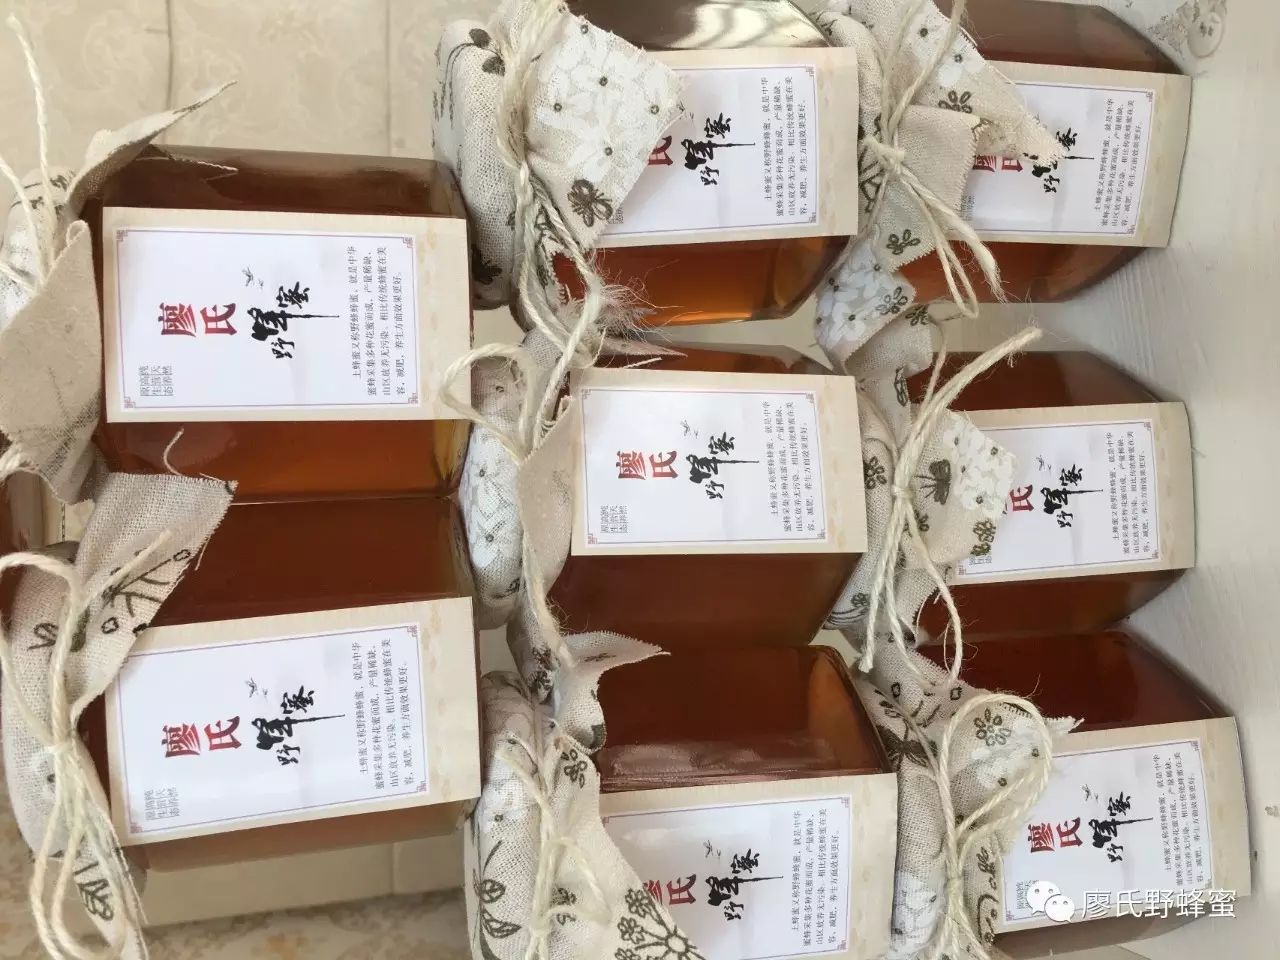 自制蜂蜜柚子茶 芦荟蜂蜜 怎样养蜜蜂 牛奶蜂蜜可以一起喝吗 最好的蜂蜜品牌